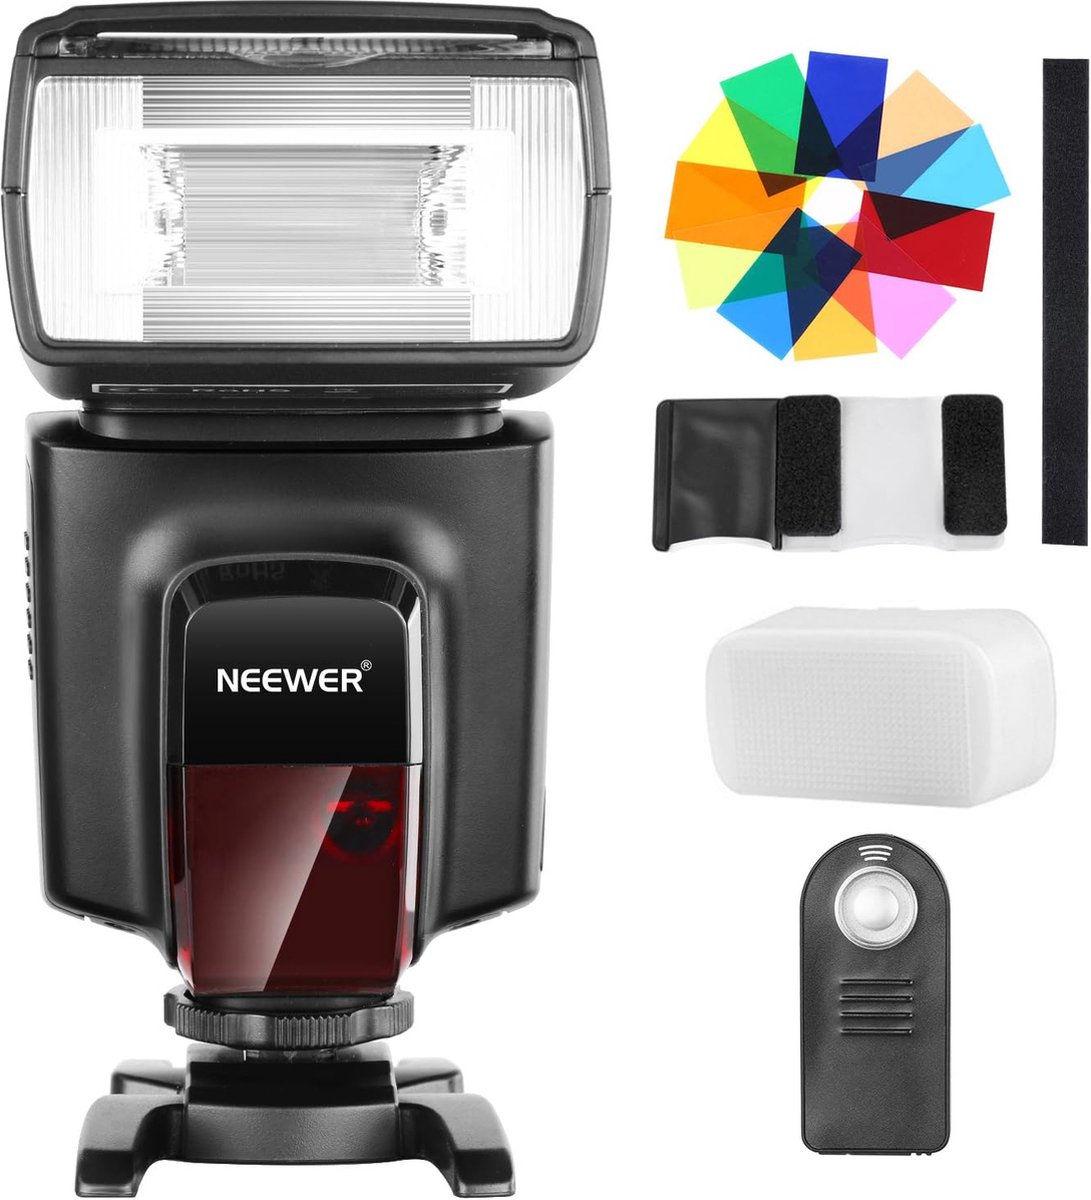 Neewer® - TT560 Flits Speedlite Flitsset voor Canon Nikon Sony Pentax DSLR Camera met Standaard Flitsschoen - Inclusief 1 x TT560 Flitsmachine, 1 x Zachte Diffuser, 1 x Afstandsbediening, 4 x Batterijen - Krachtige Flitsmogelijkheden voor Fotografie